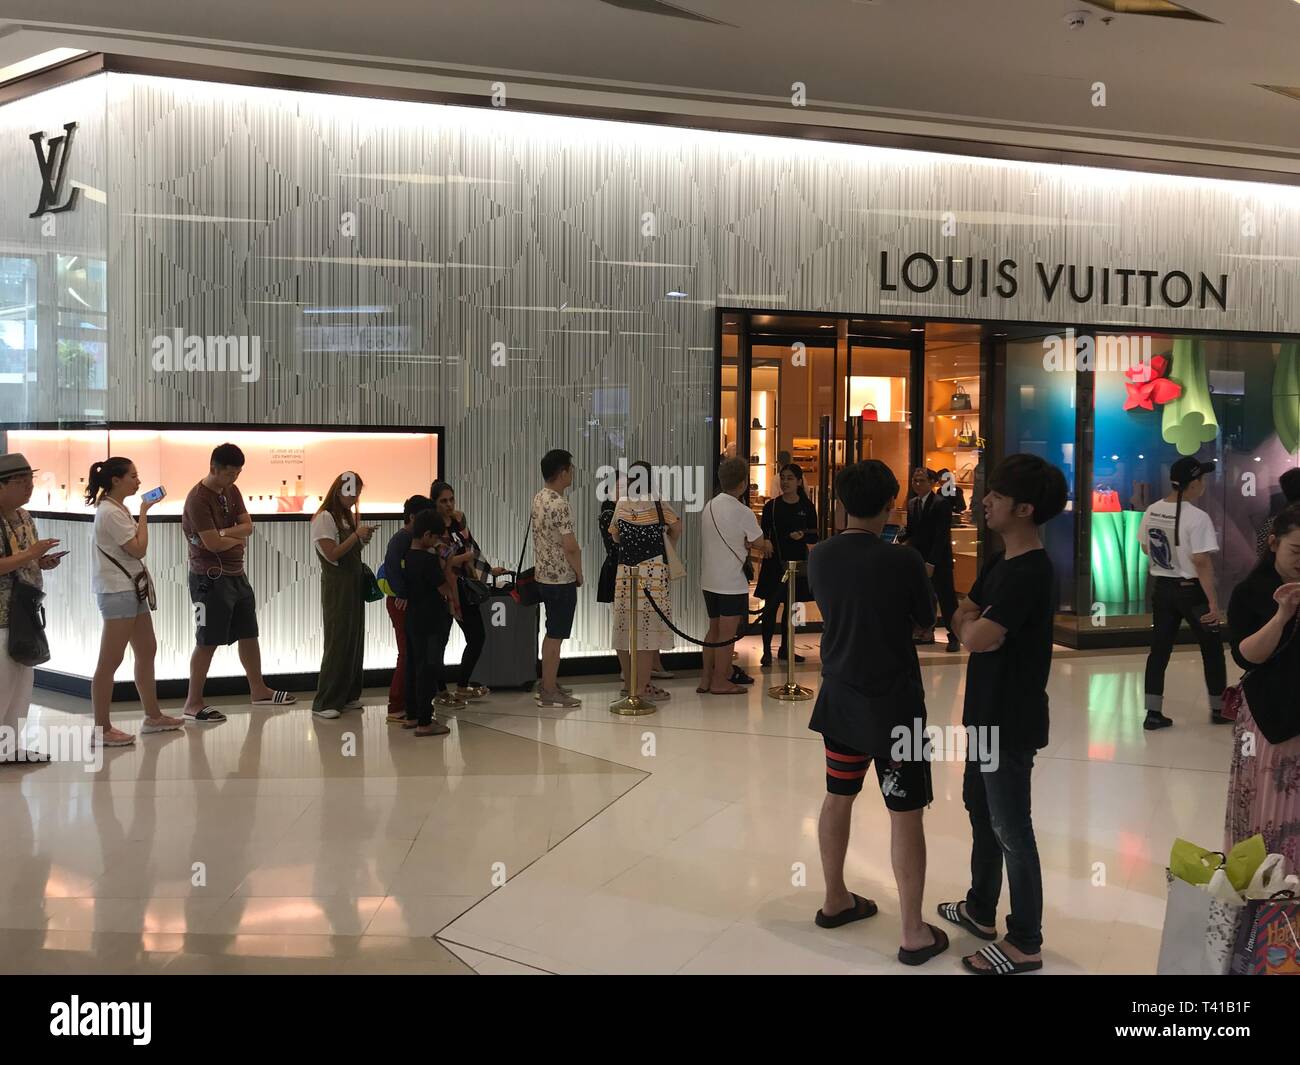 BANGKOK, THAILAND - APRIL 16, 2018: Louis Vuitton shop with a